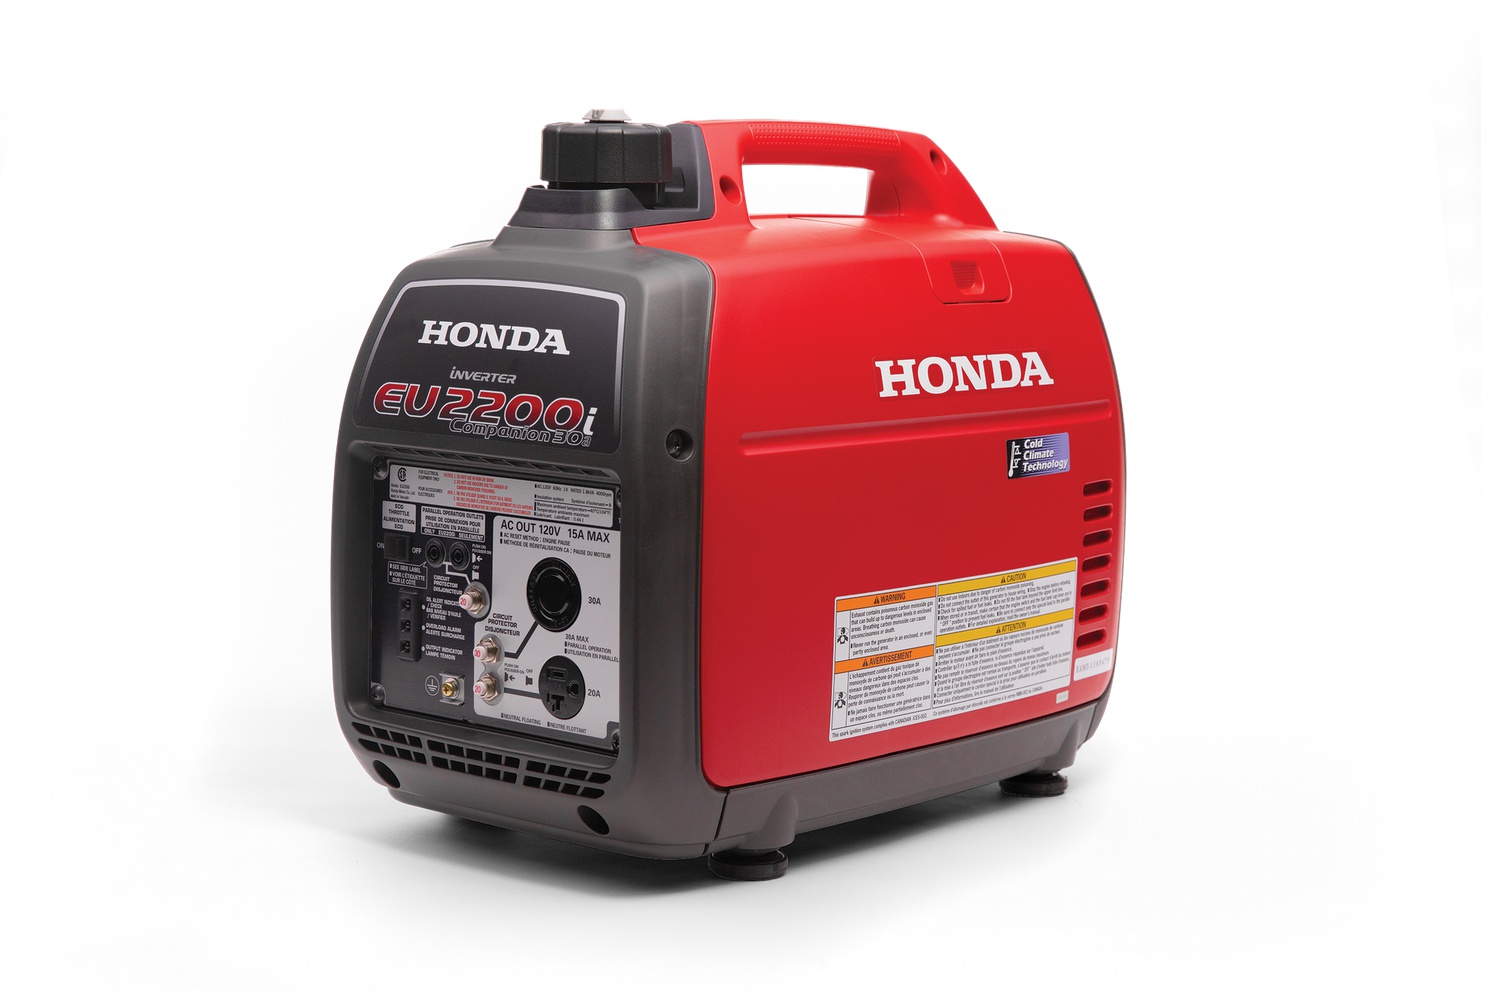 Honda generatrice honda eu2200itc1 eu2200 companion 2023